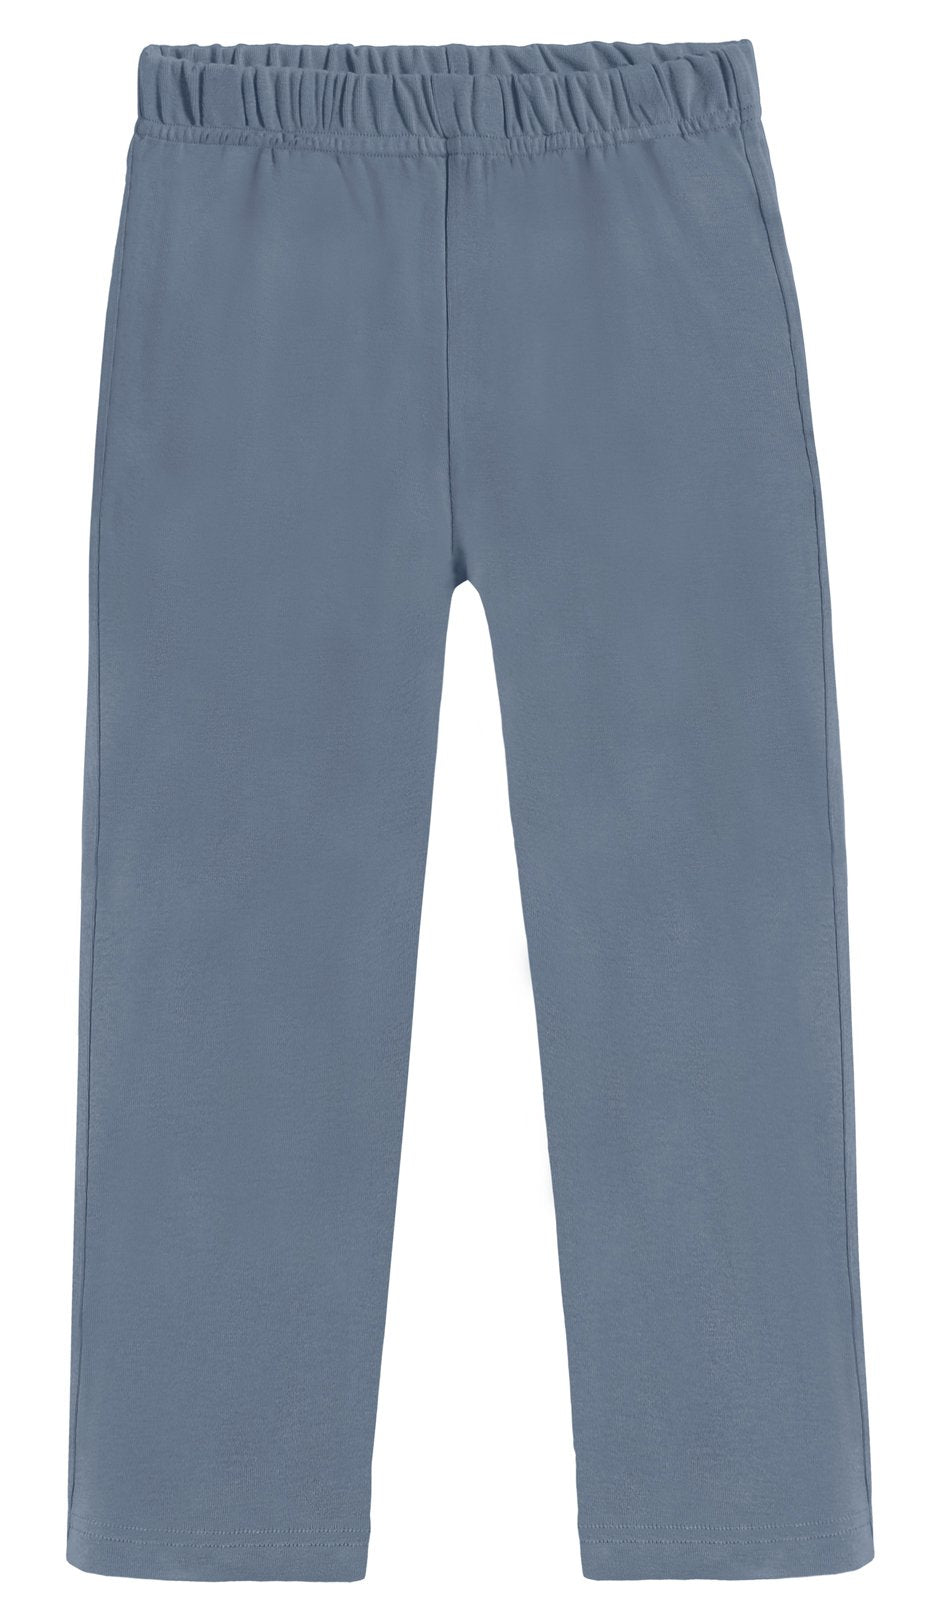 Boys Soft Cotton Athletic Pants - UPF 50+ | Concrete